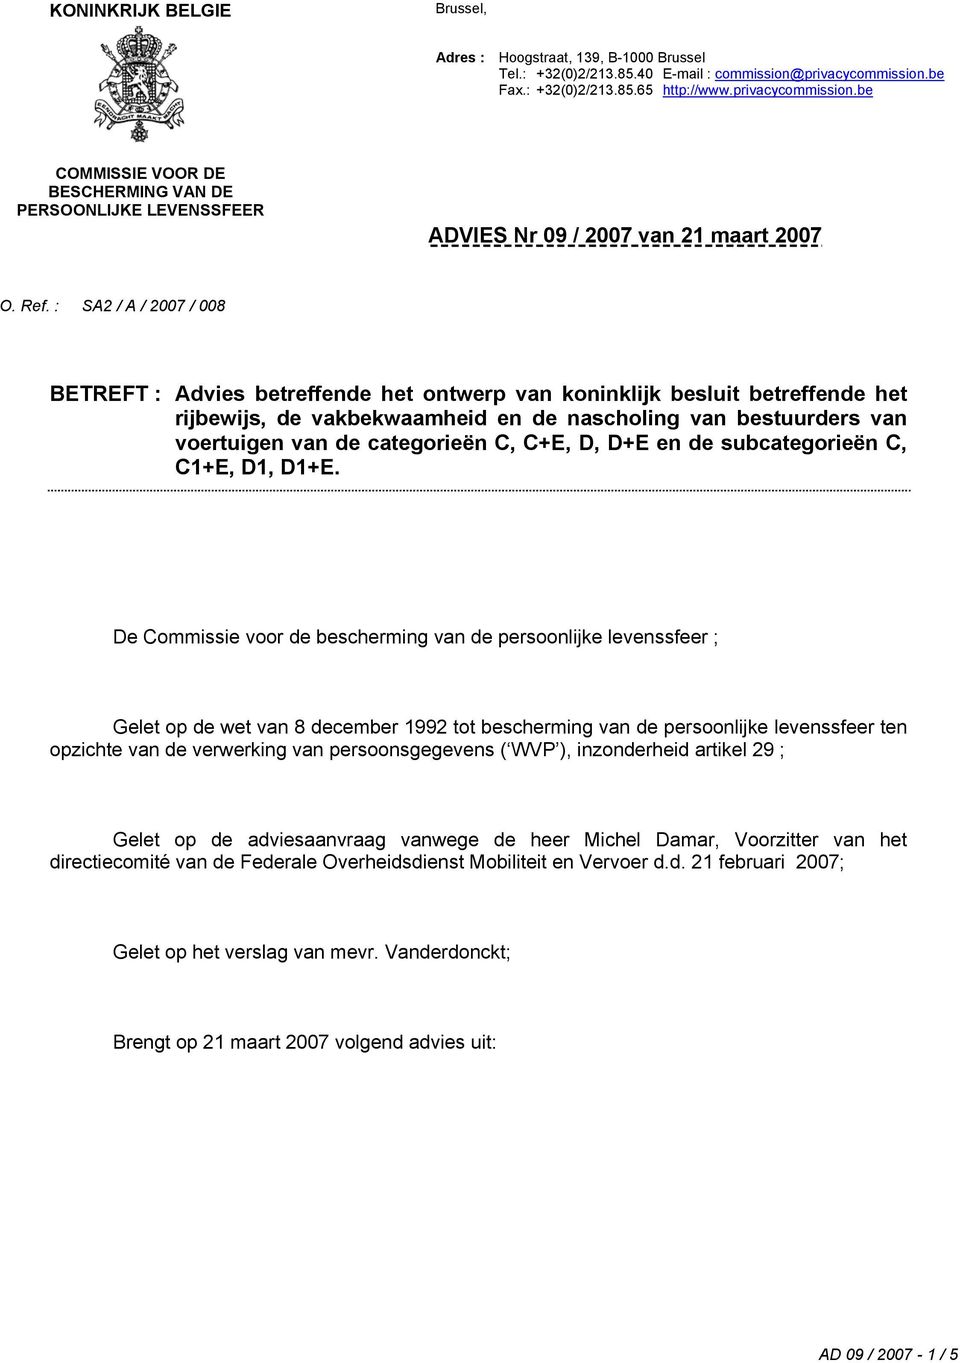 : SA2 / A / 2007 / 008 BETREFT : Advies betreffende het ontwerp van koninklijk besluit betreffende het rijbewijs, de vakbekwaamheid en de nascholing van bestuurders van voertuigen van de categorieën